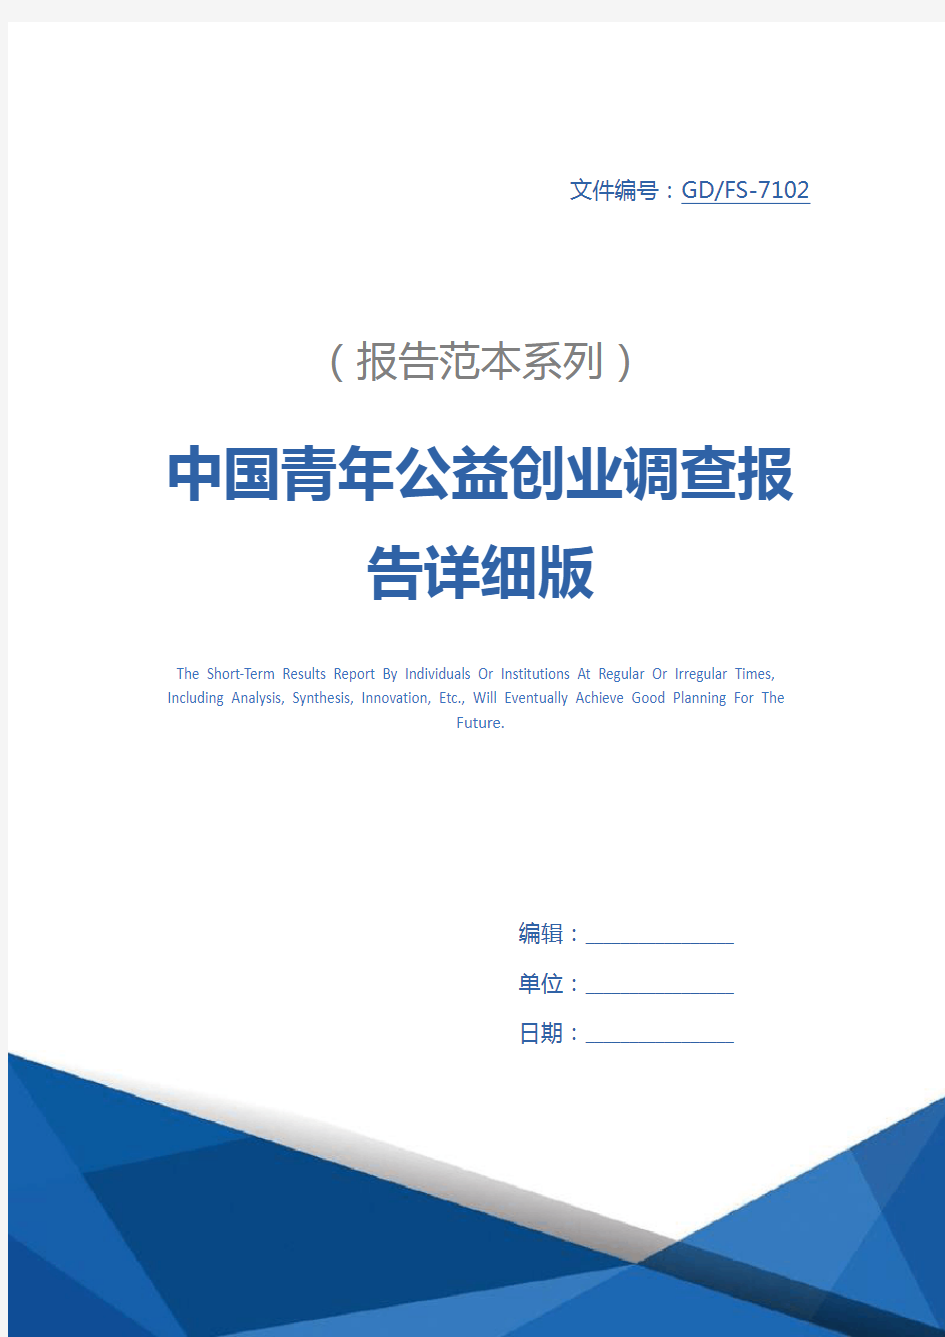 中国青年公益创业调查报告详细版_1